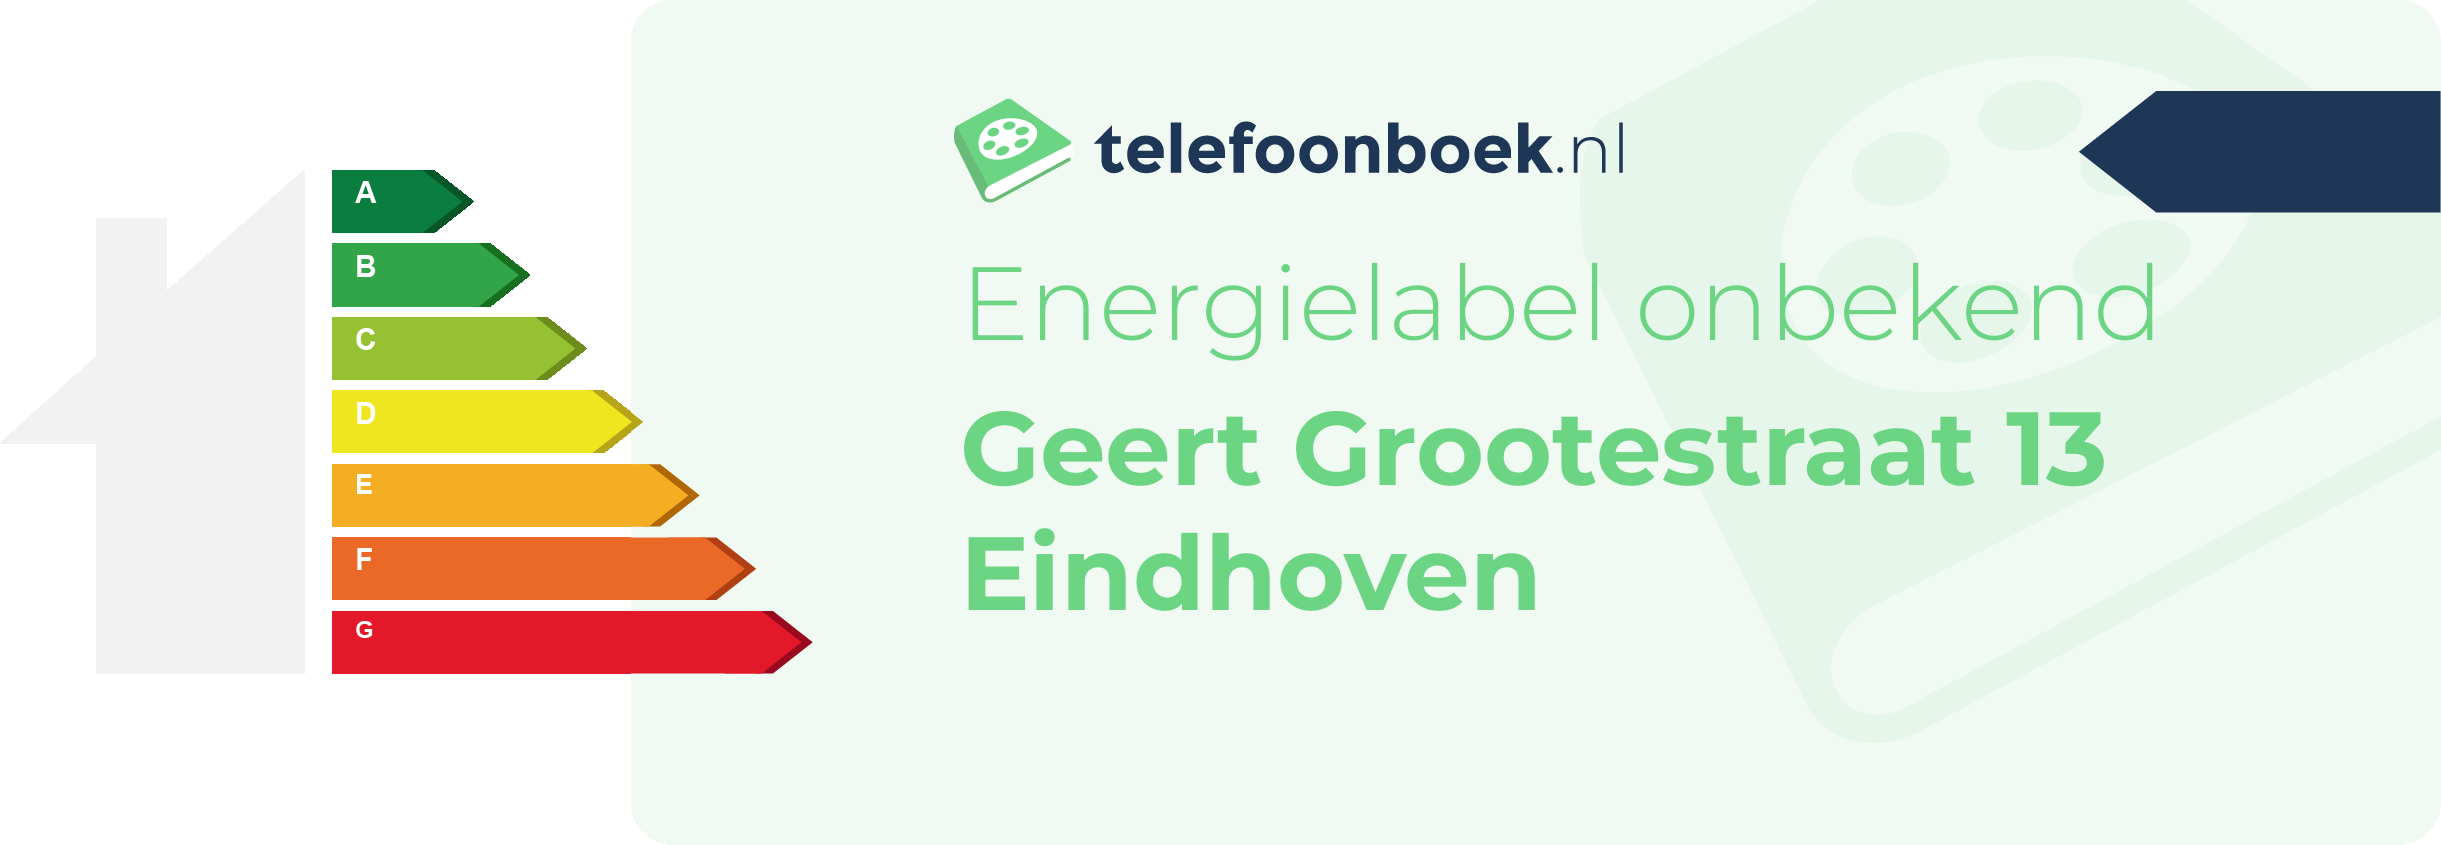 Energielabel Geert Grootestraat 13 Eindhoven